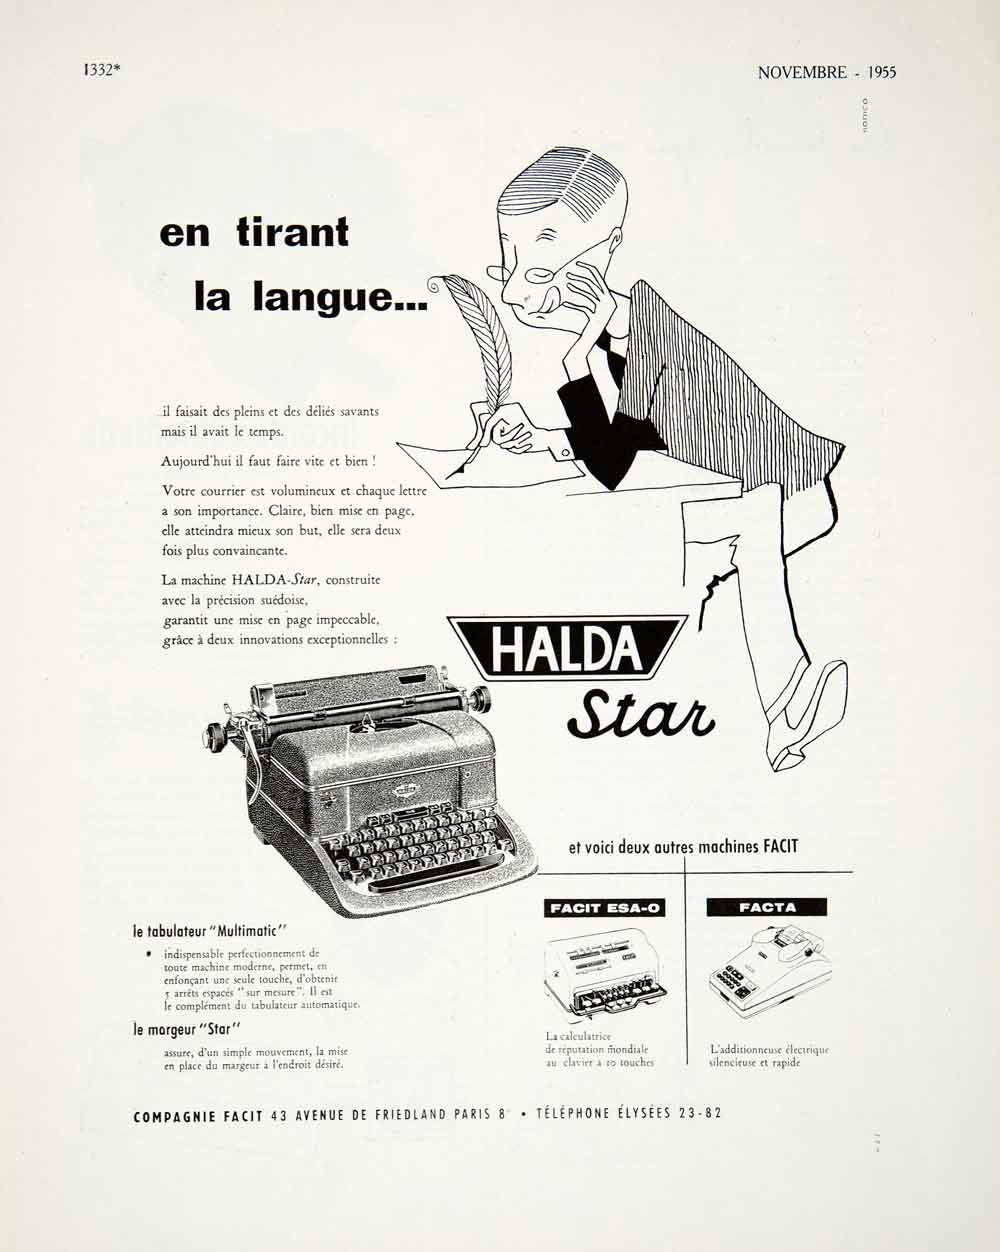 1955 Ad Compagnie Facit Paris France French Halda Star Machine Typewriter VEN2